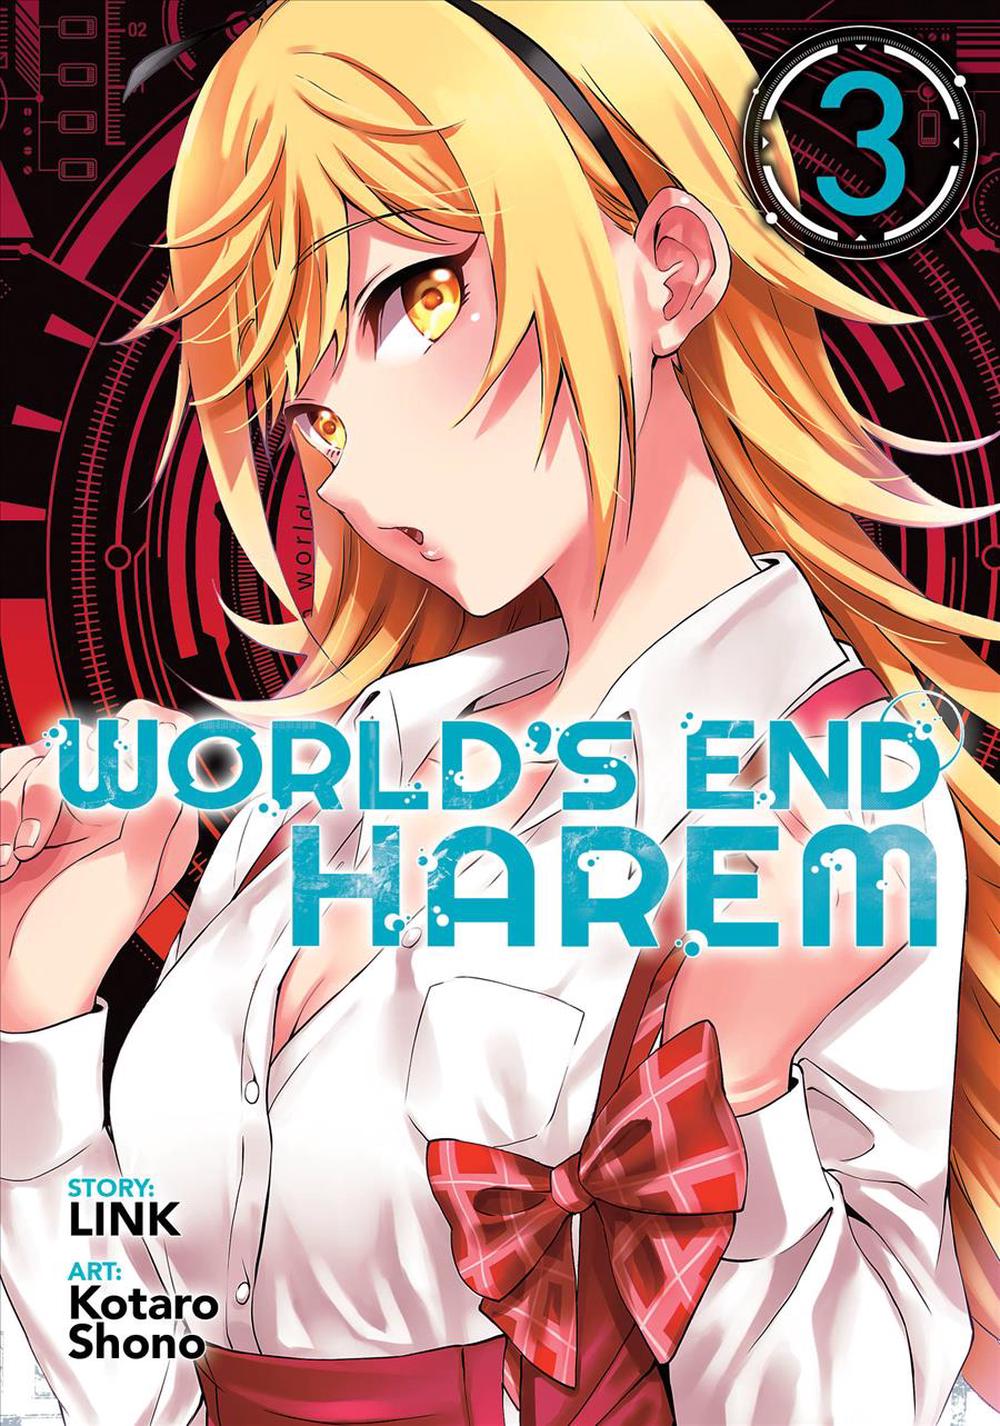 World's End Harem Vol. 14 - After World